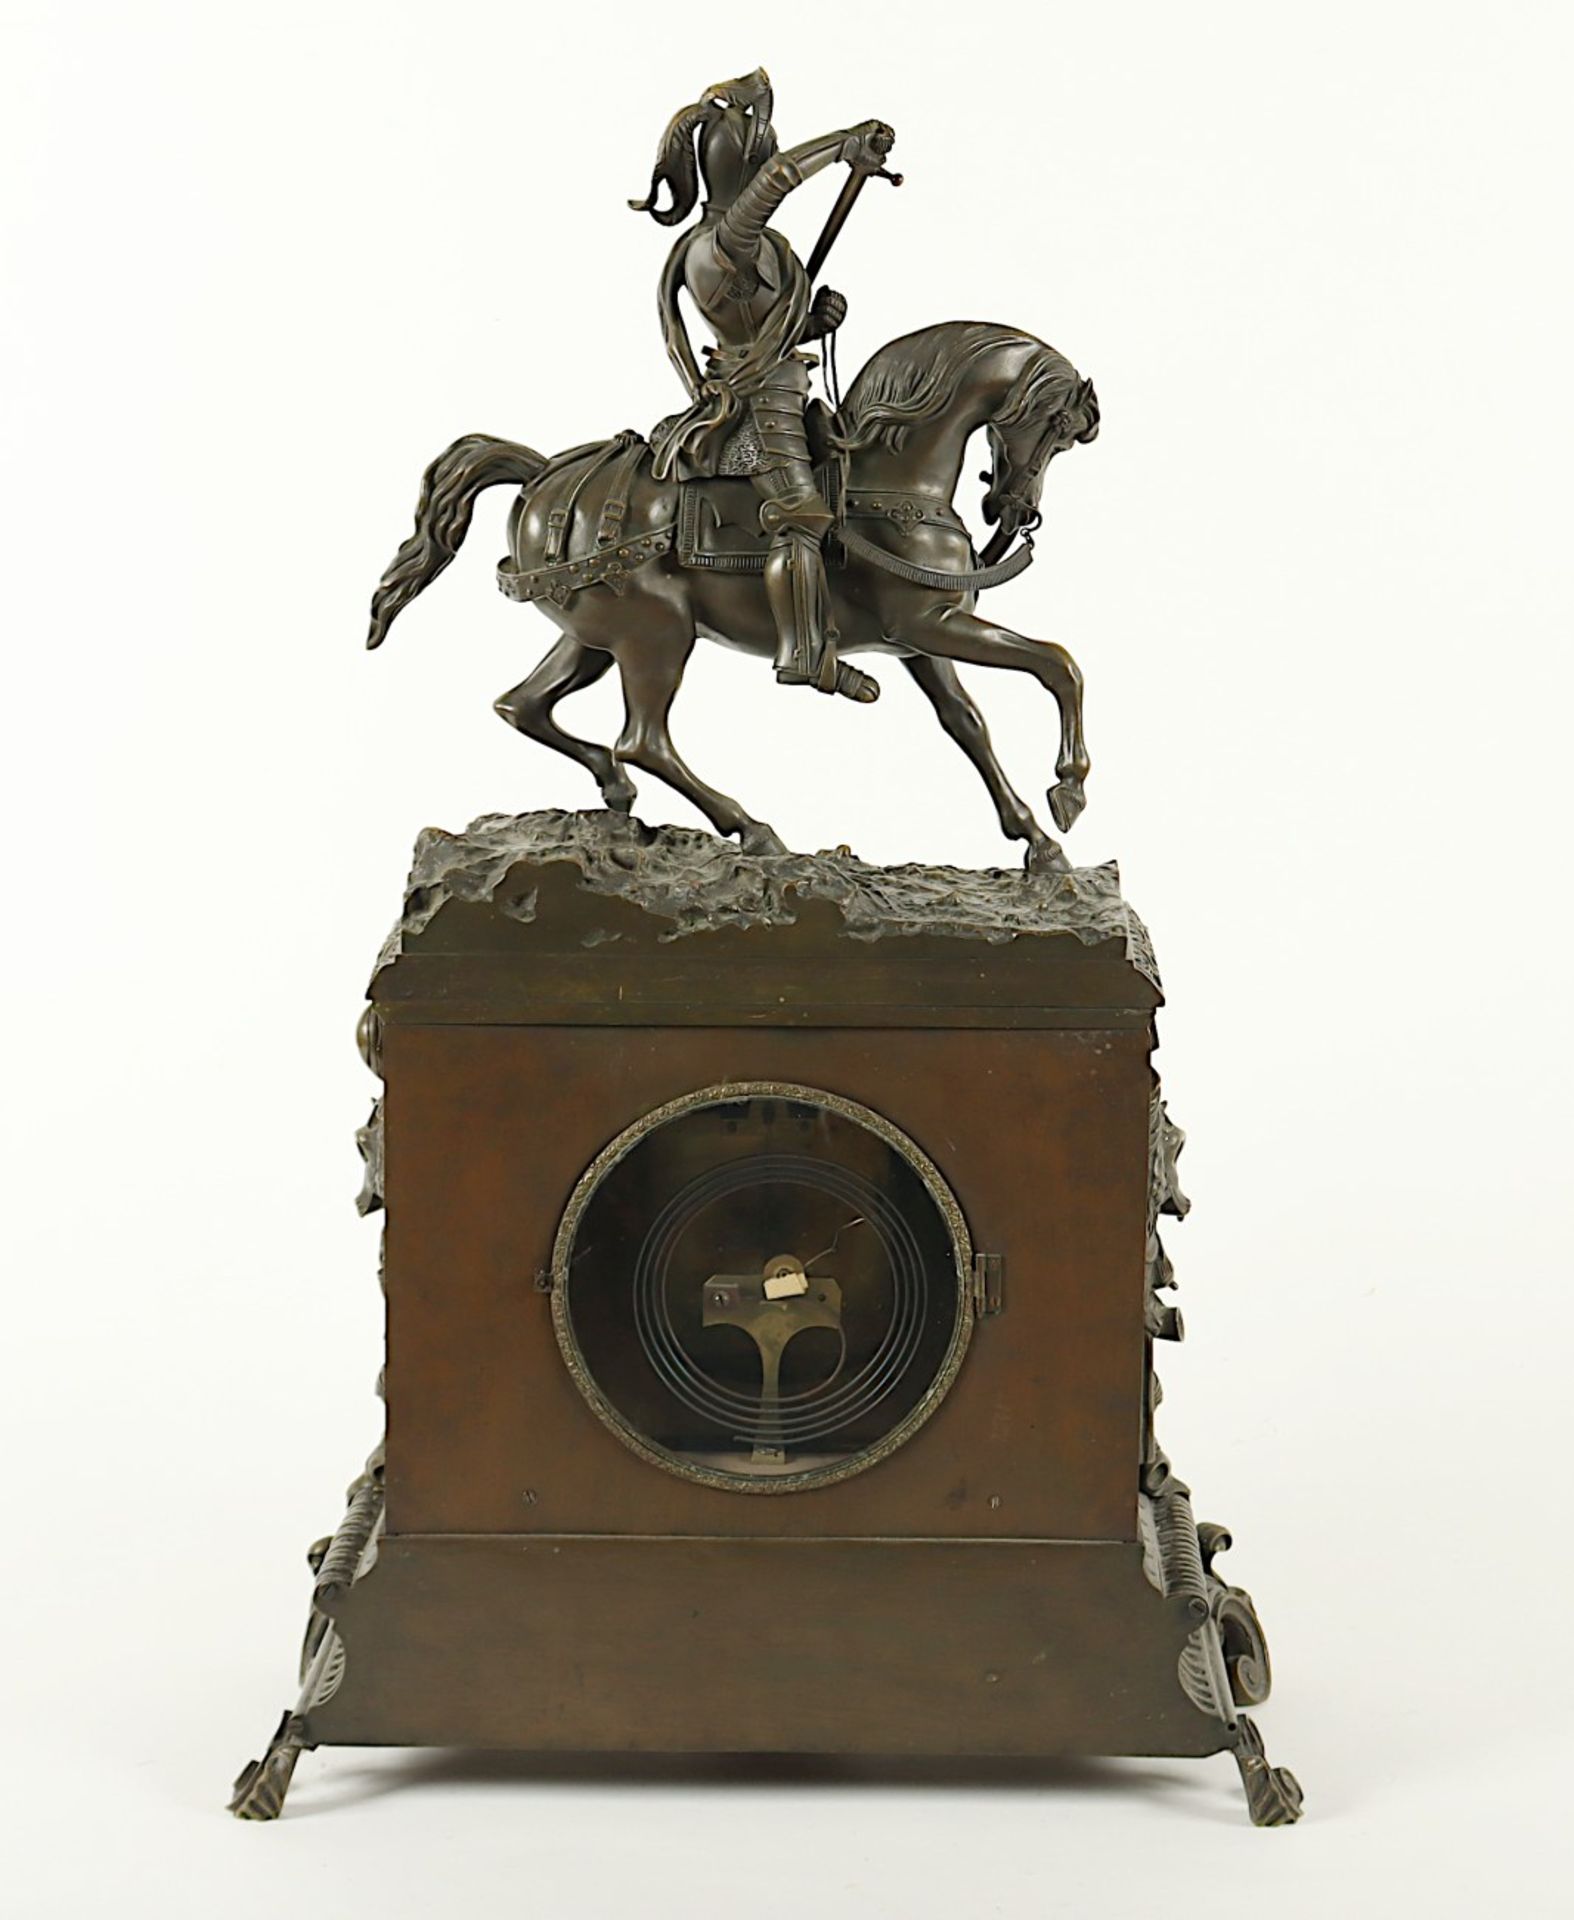 GROSSE FIGURENPENDULE, Bronze, patiniert, Werk mit Fadenaufhängung und Schlag auf Glocke, Faden res - Image 5 of 6